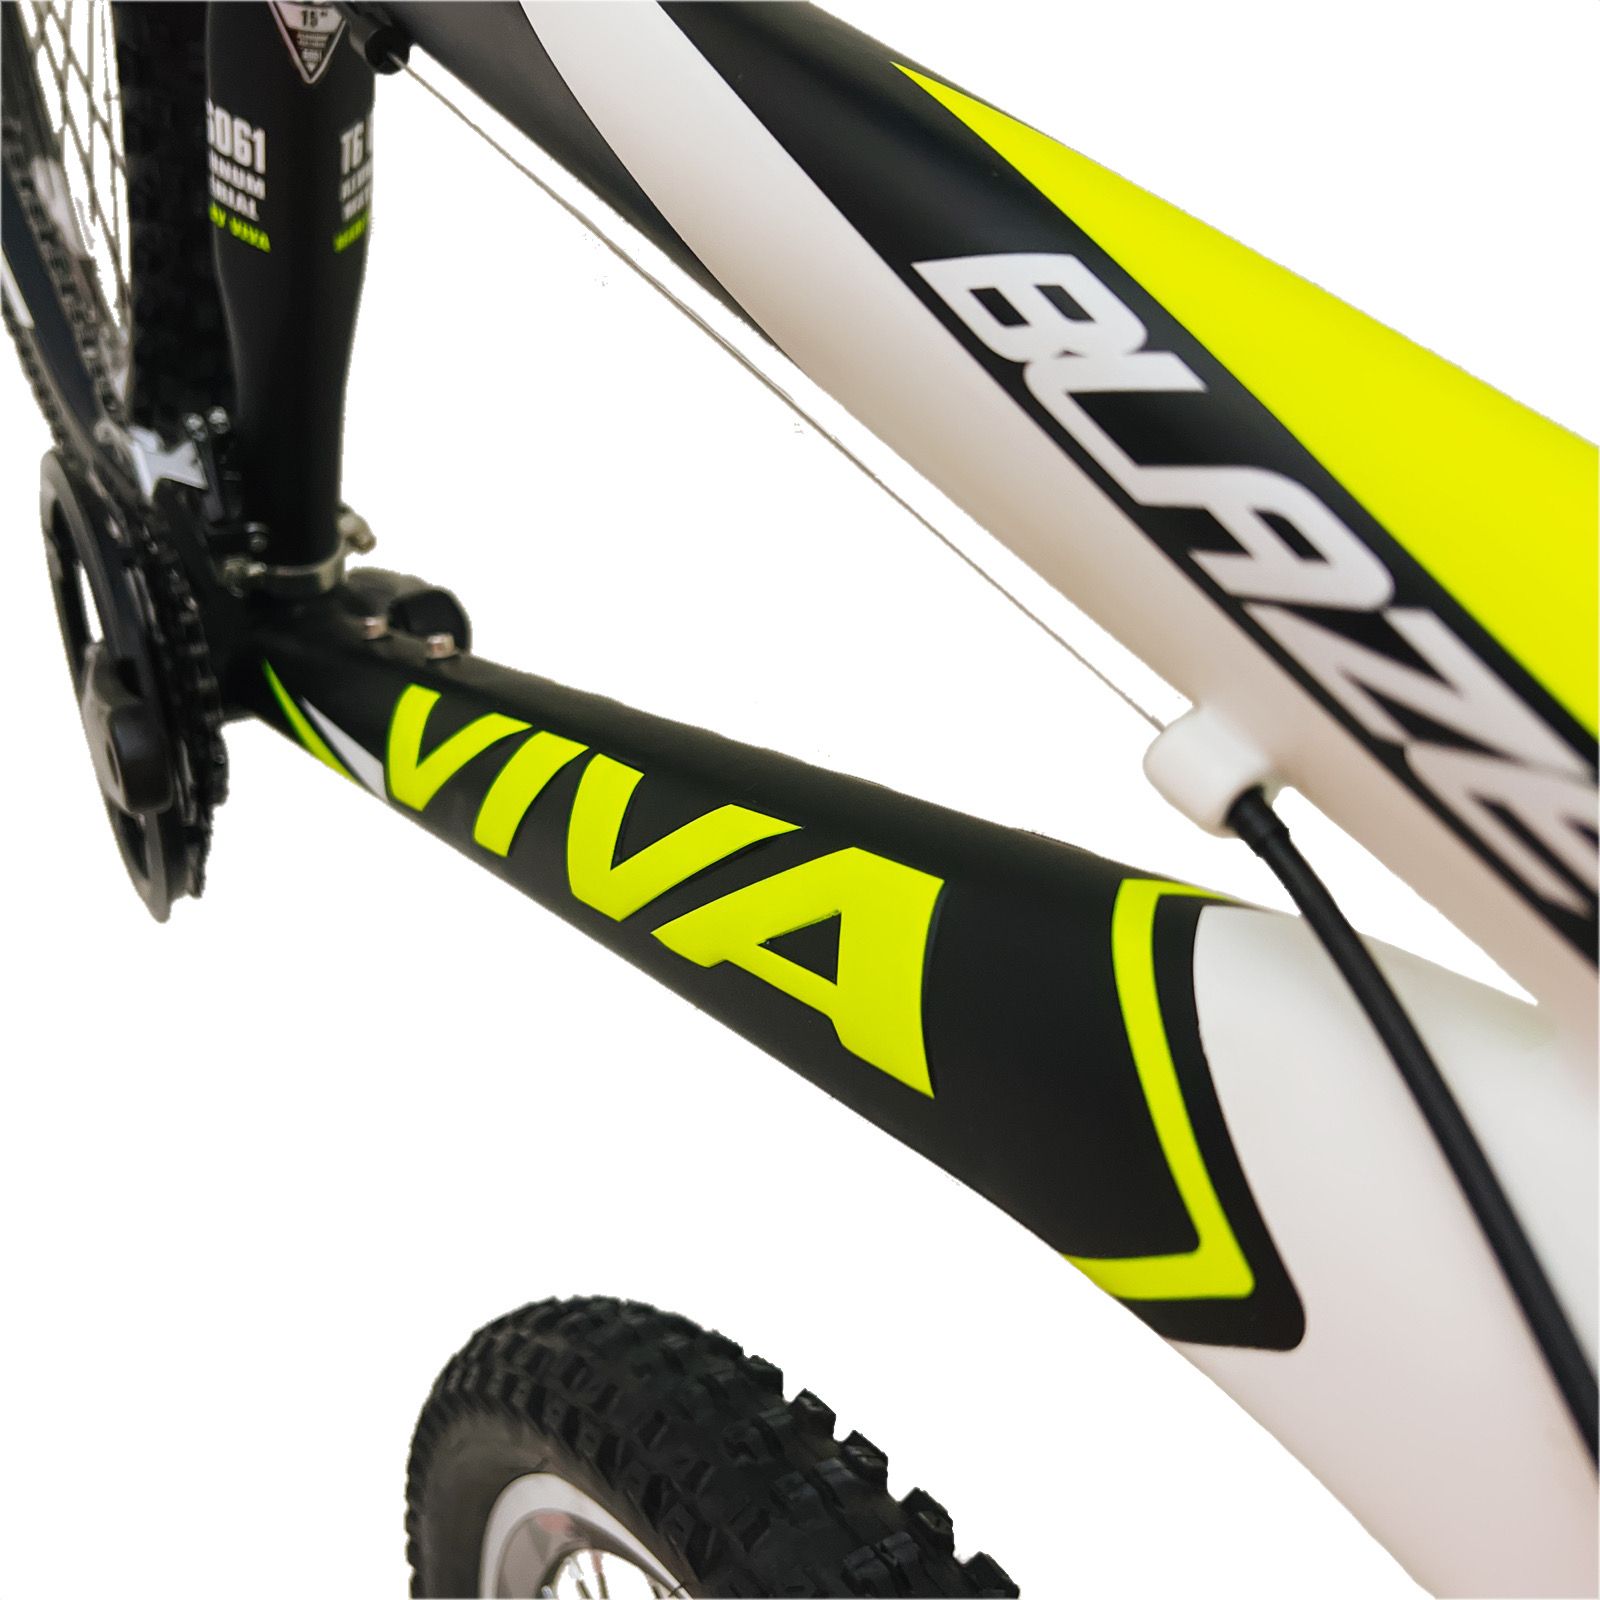 دوچرخه کوهستان ویوا مدل BLAZE کد 15 سایز 26 -  - 14